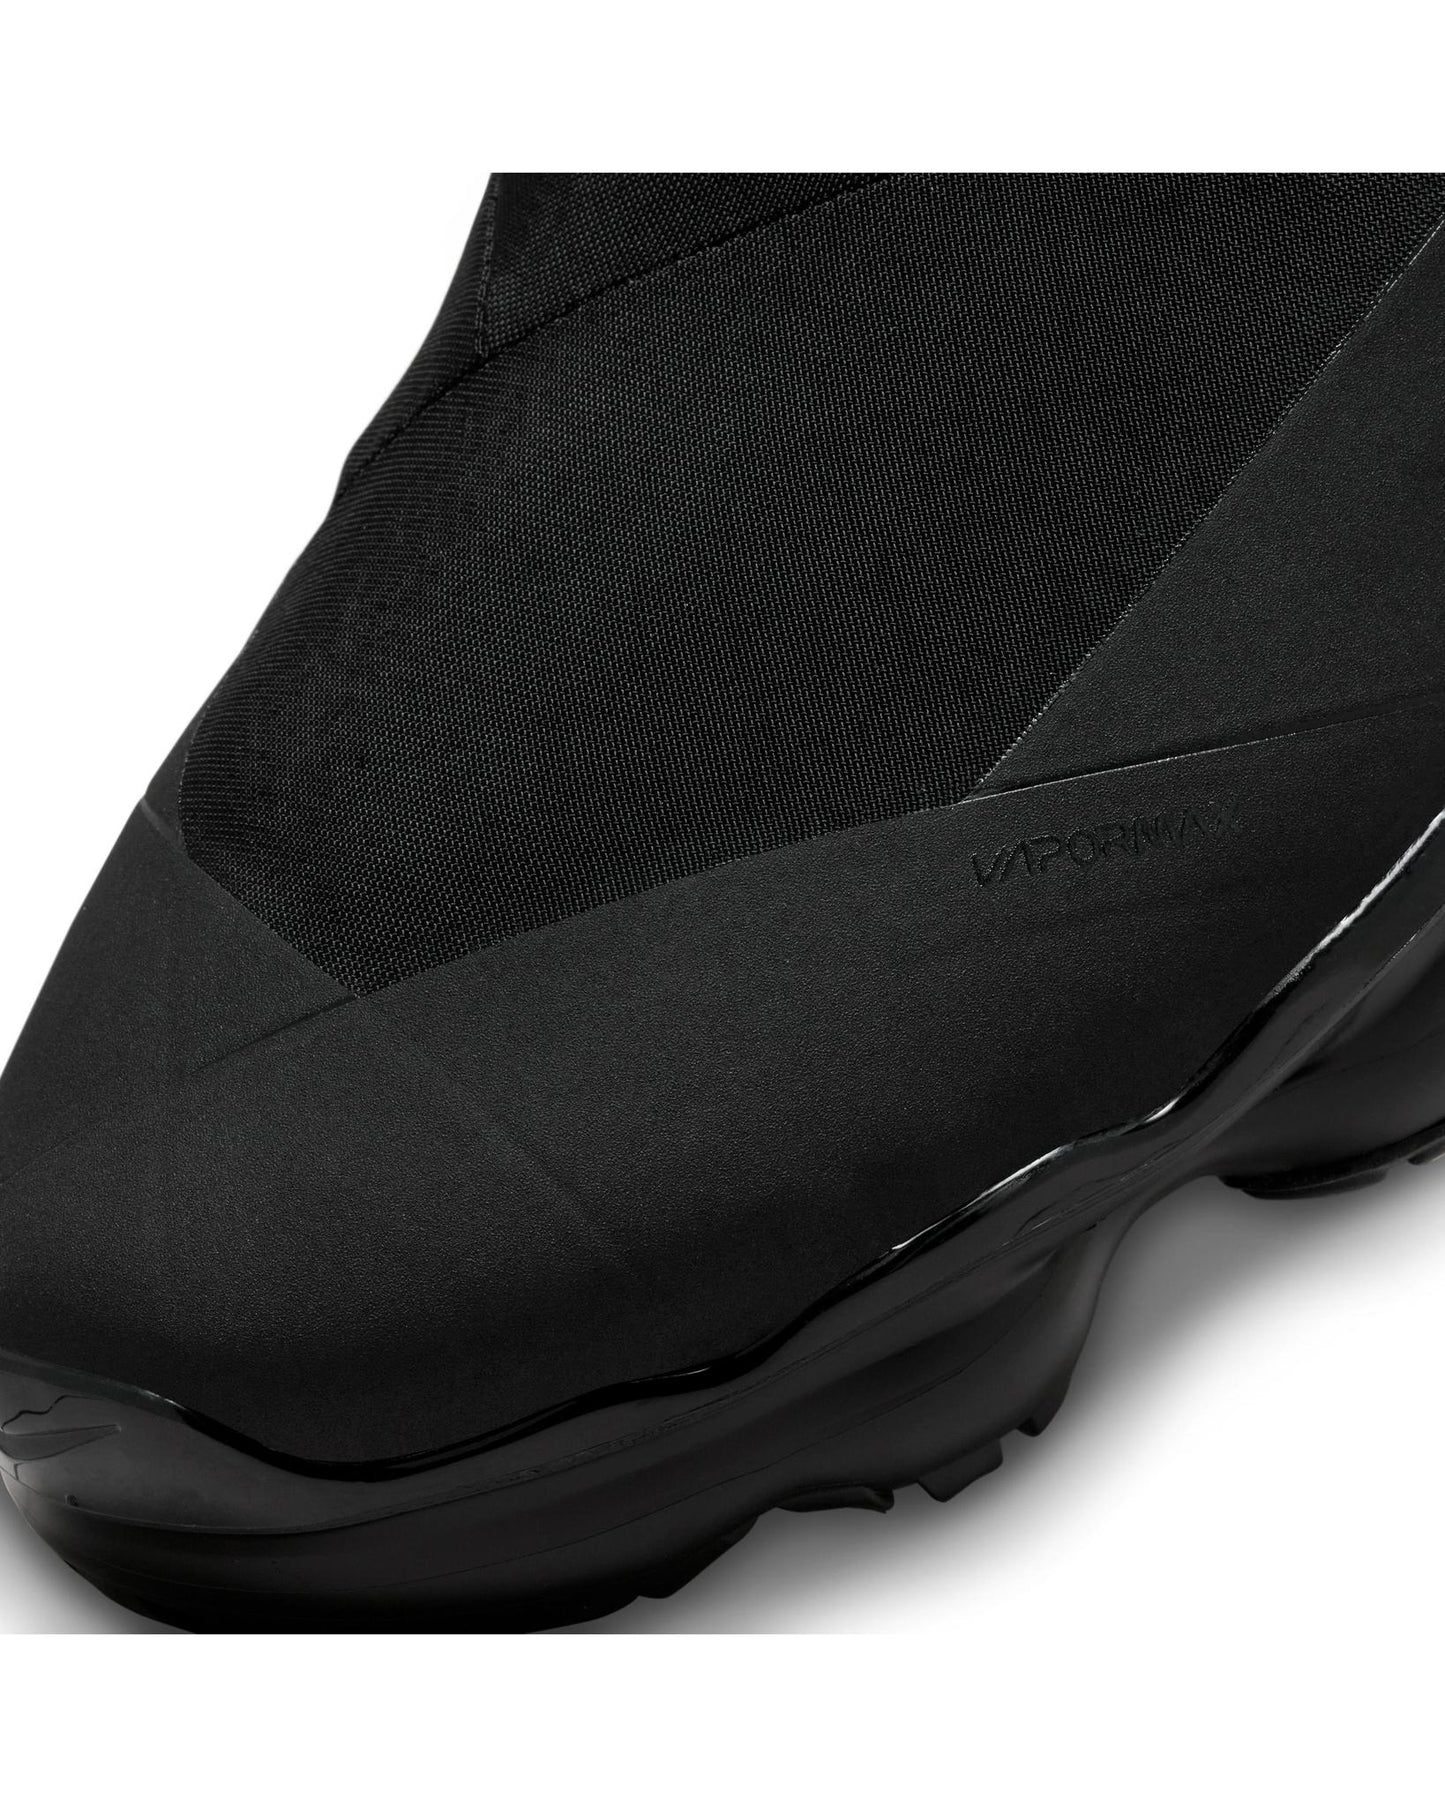 
                    
                      Nike Air VaporMax Moc Roam "Black"
                    
                  